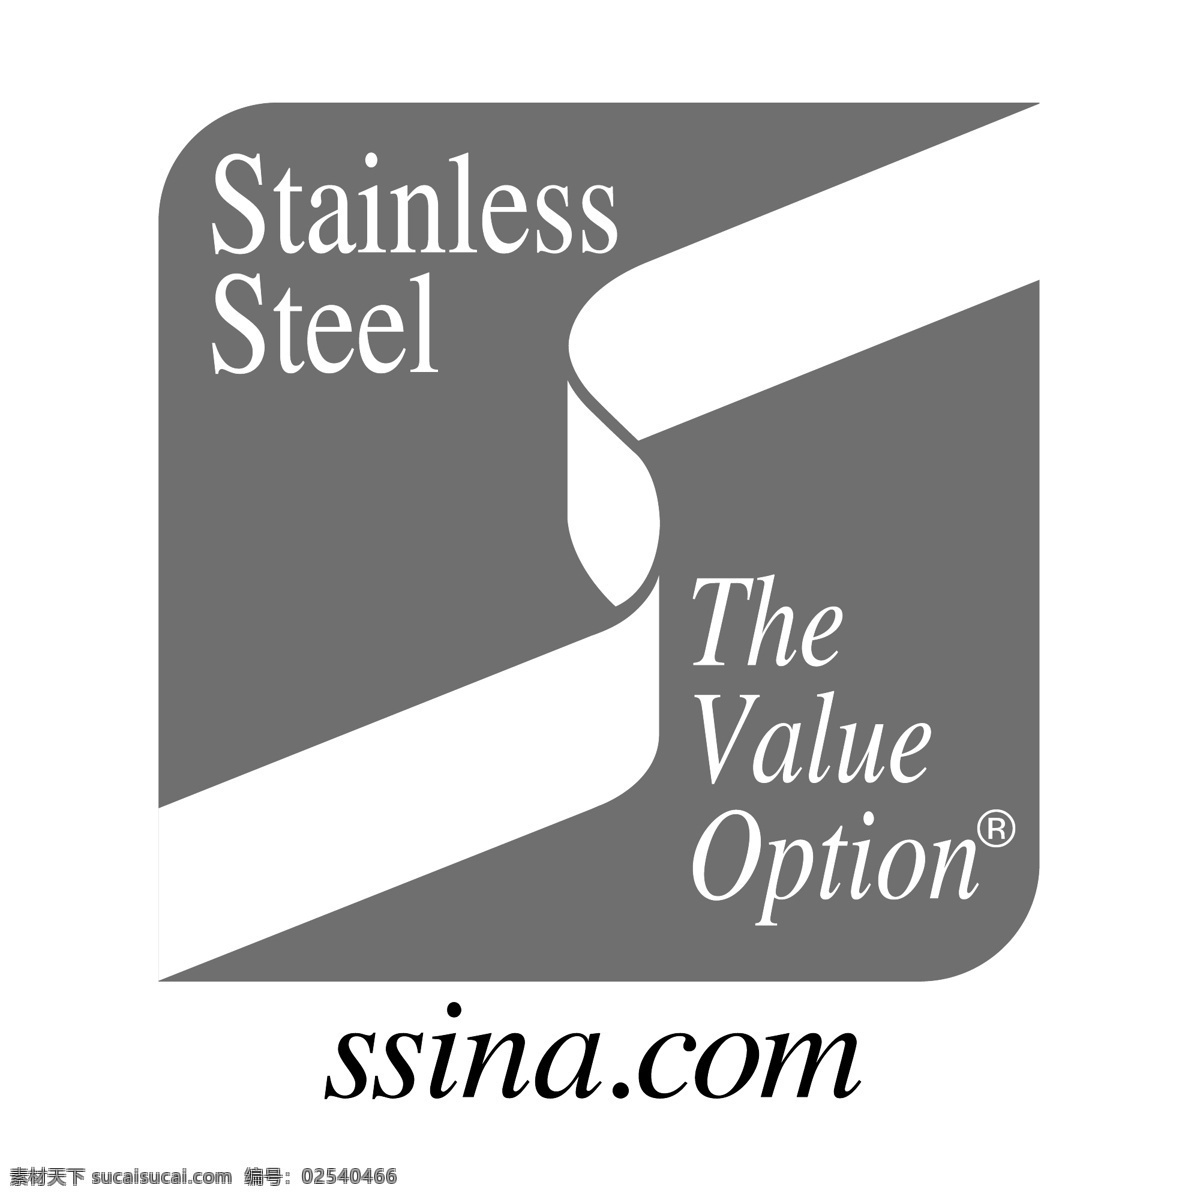 北美 特种 钢 工业 协会 免费 标志 标识 psd源文件 logo设计